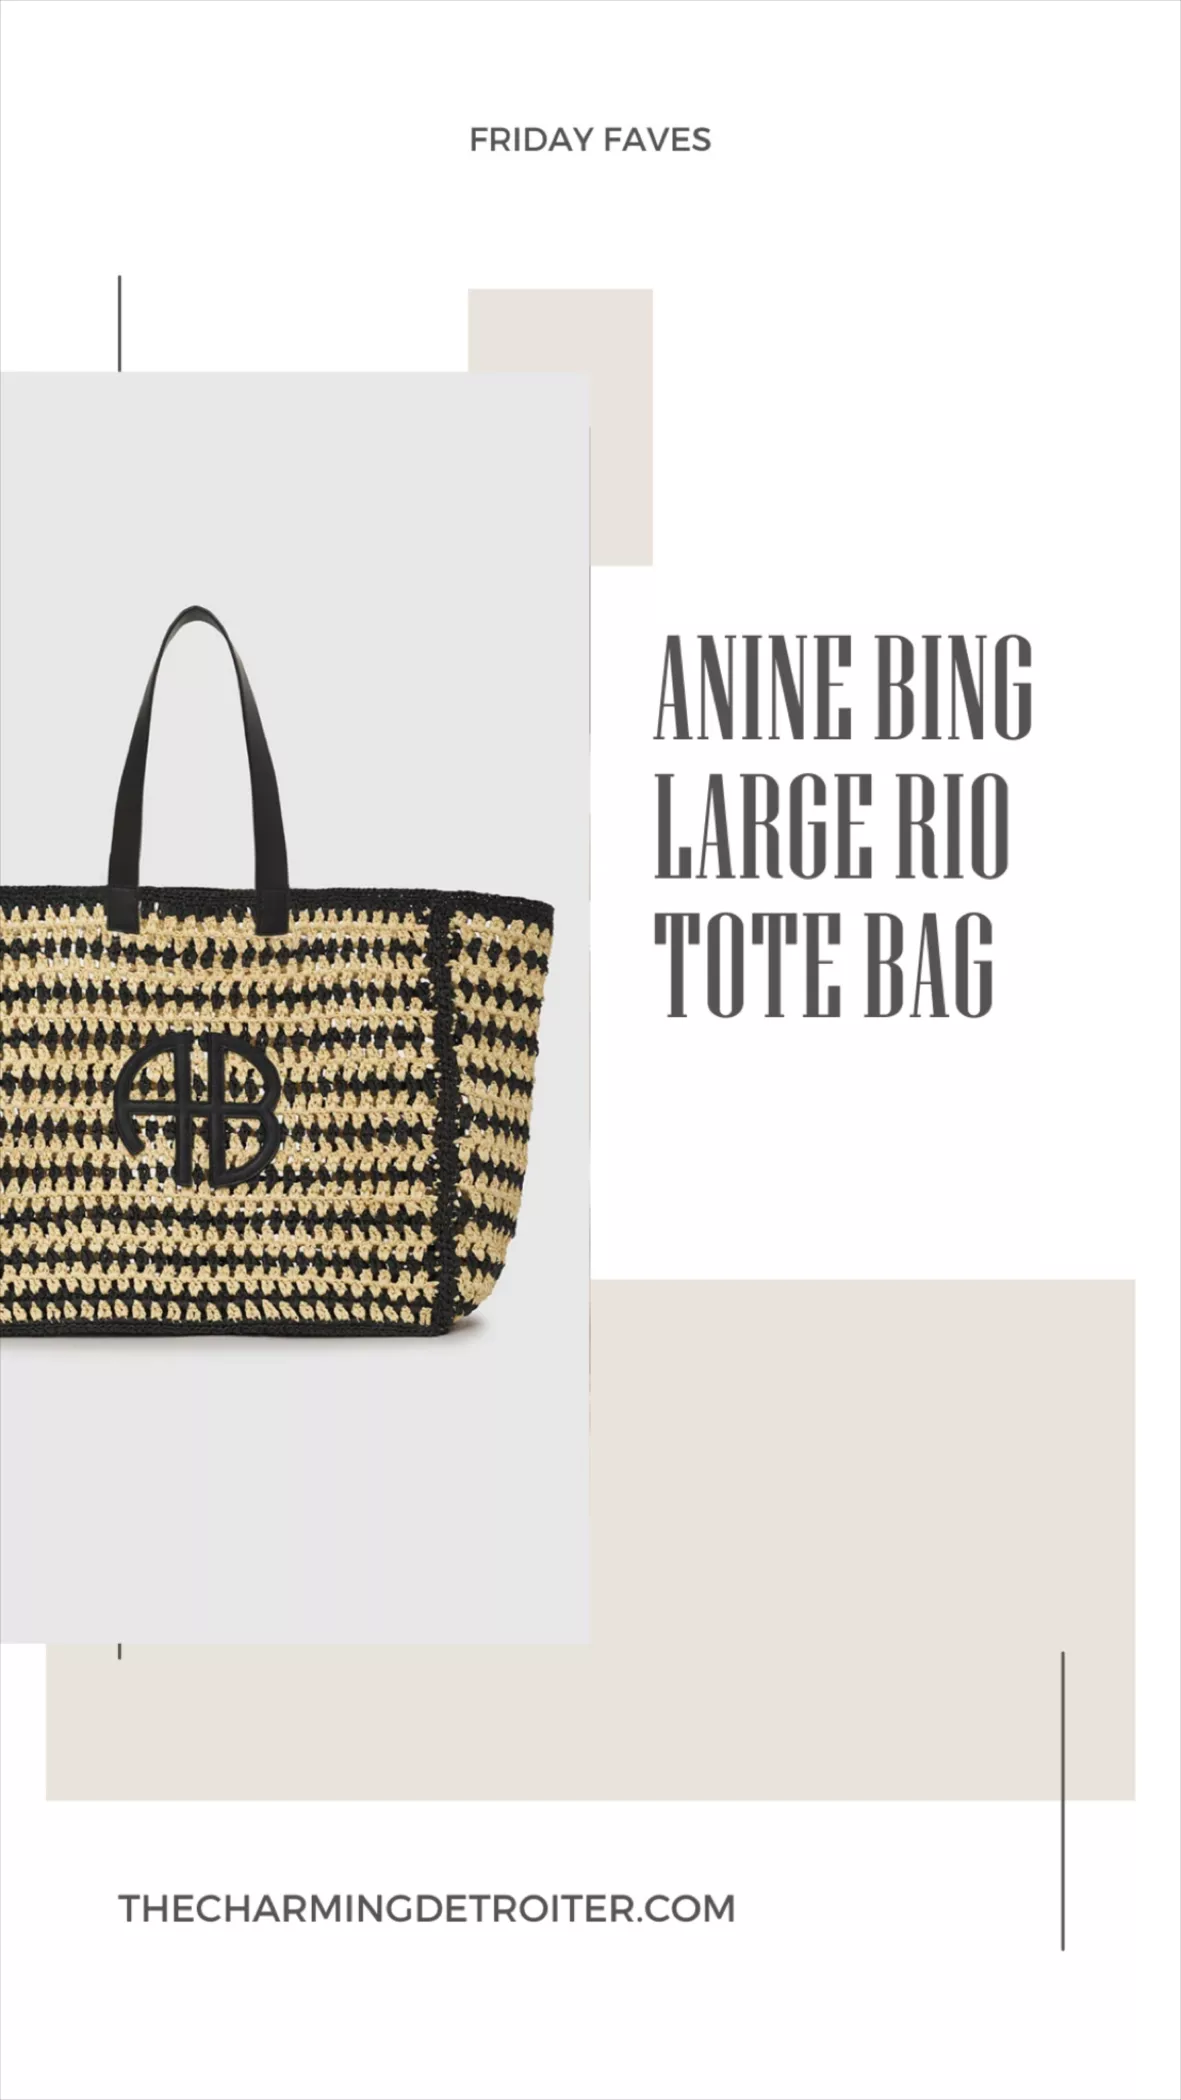 Small rio canvas tote bag - ANINE BING - Women